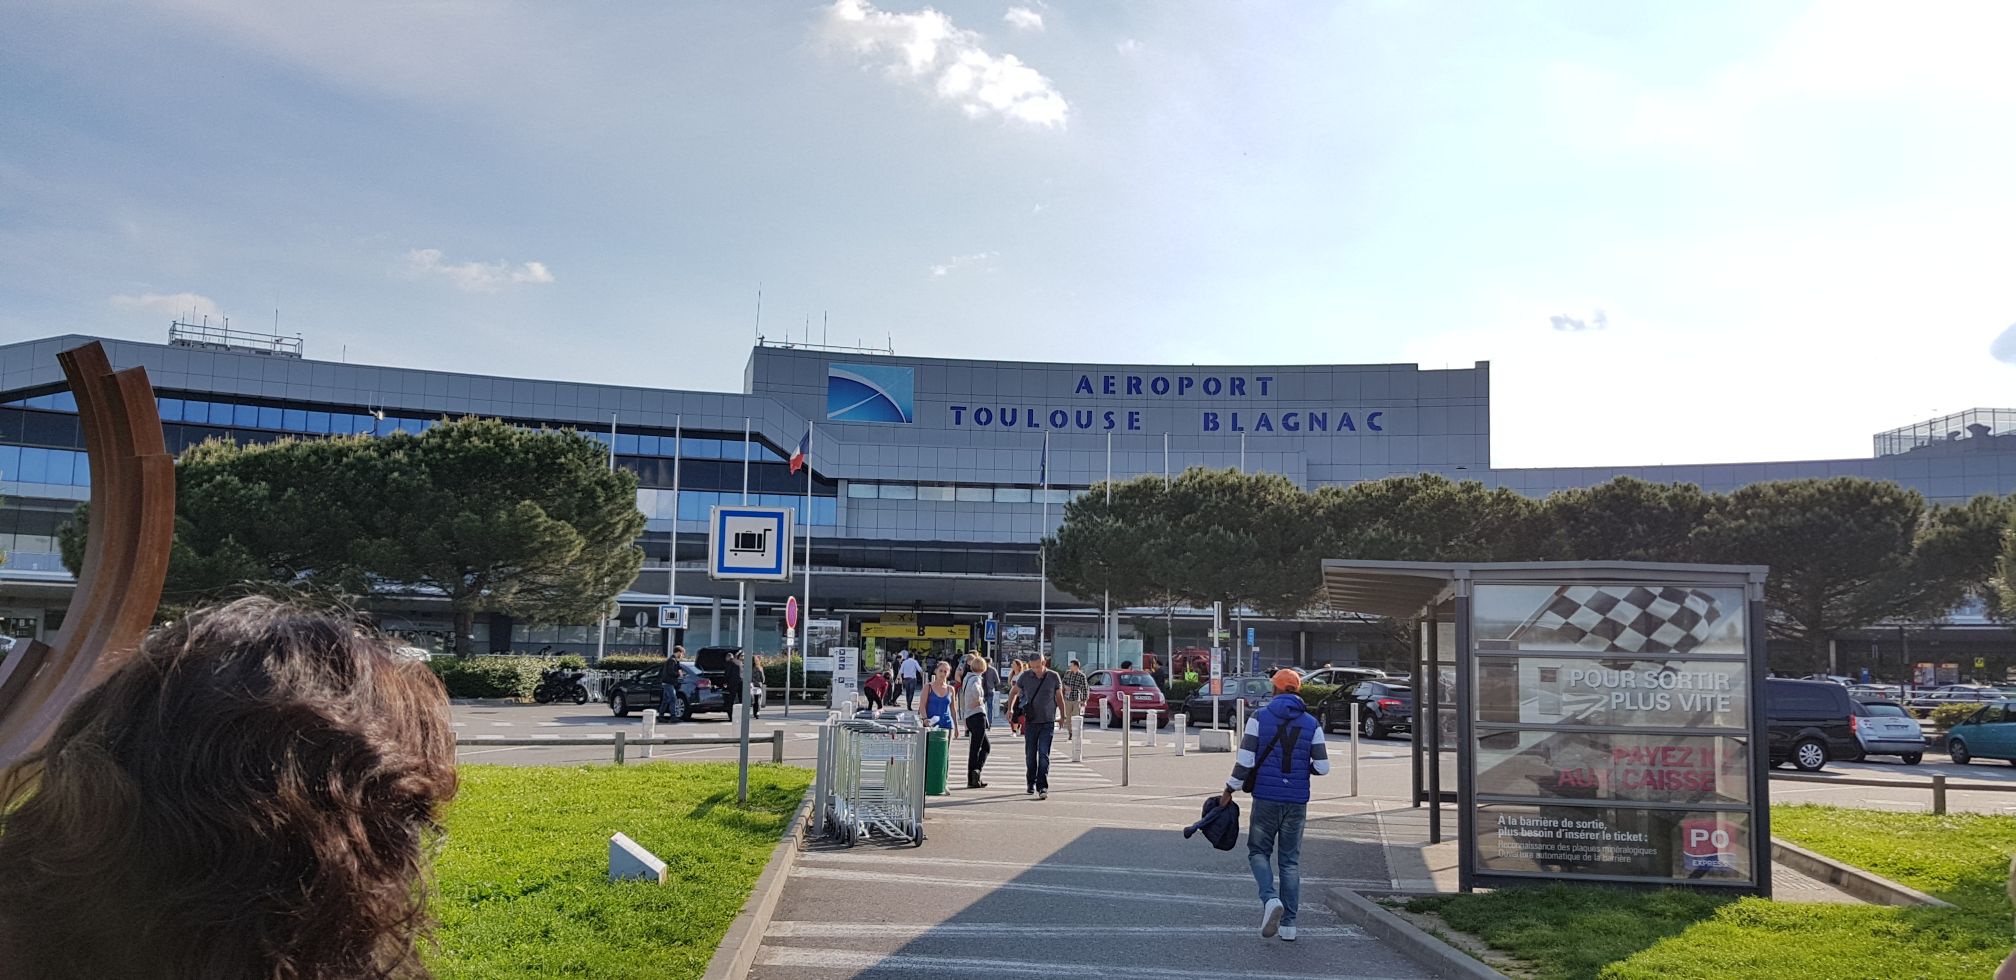 Aéroport Toulouse Blagnac : donner le pouvoir aux collectivités locales